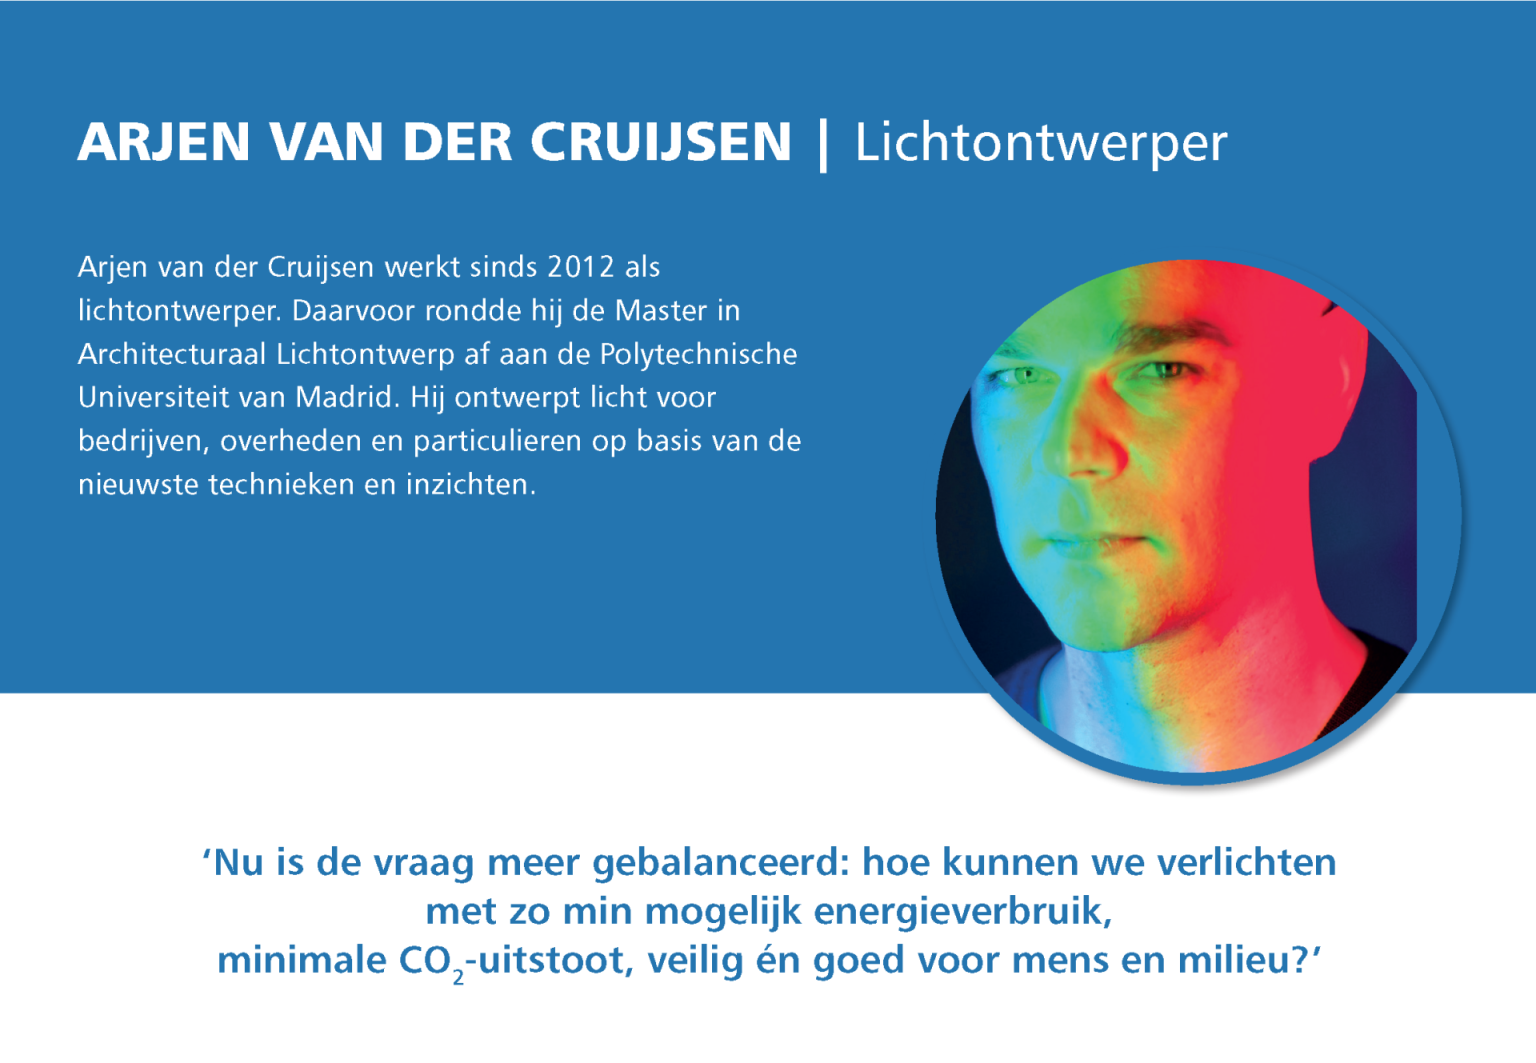 Profiel van Arjen van der Cruijsen: ‘Hoe kunnen we verlichten met zo min mogelijkenergieverbruik?’